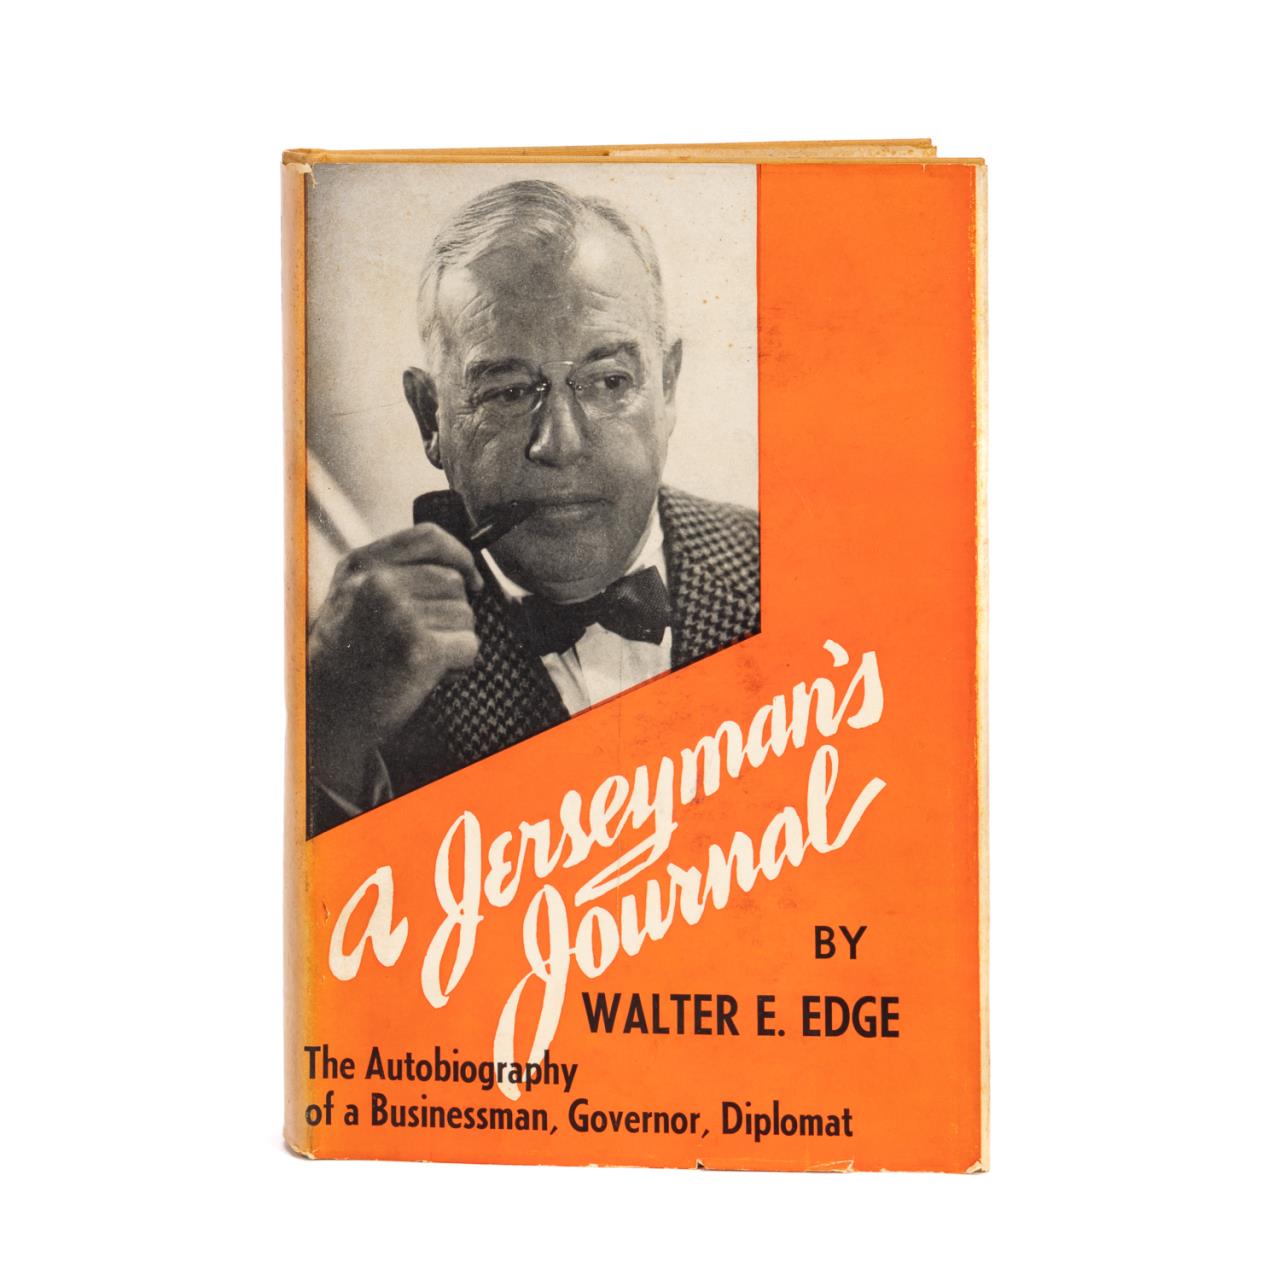 WALTER E. EDGE: A JERSEYMAN'S JOURNAL